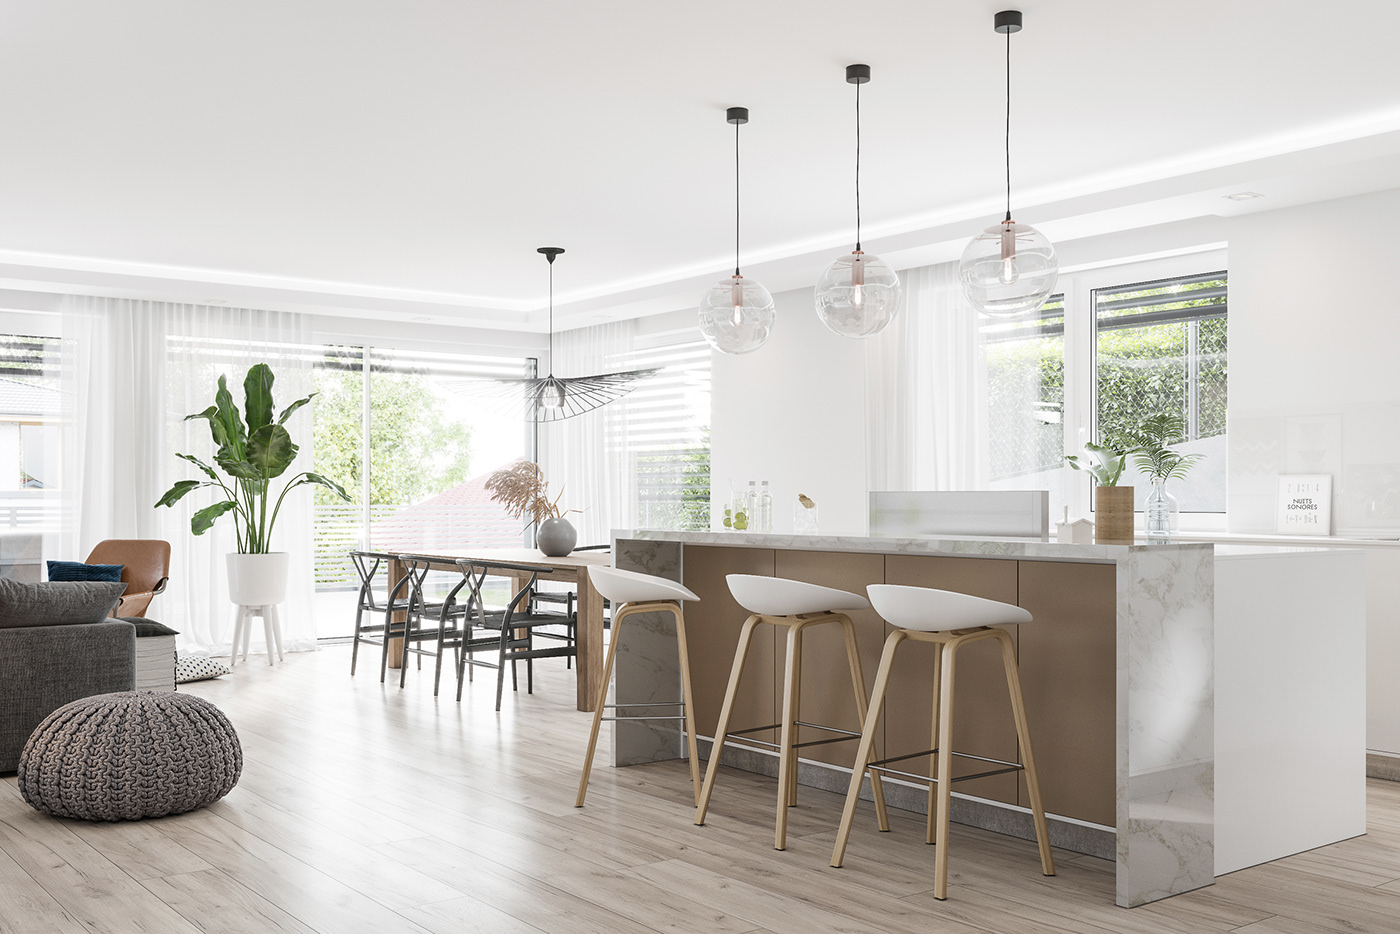 3ds max corona renderer Applicata videosfera interior design  Interior Visualization modern interior apartment